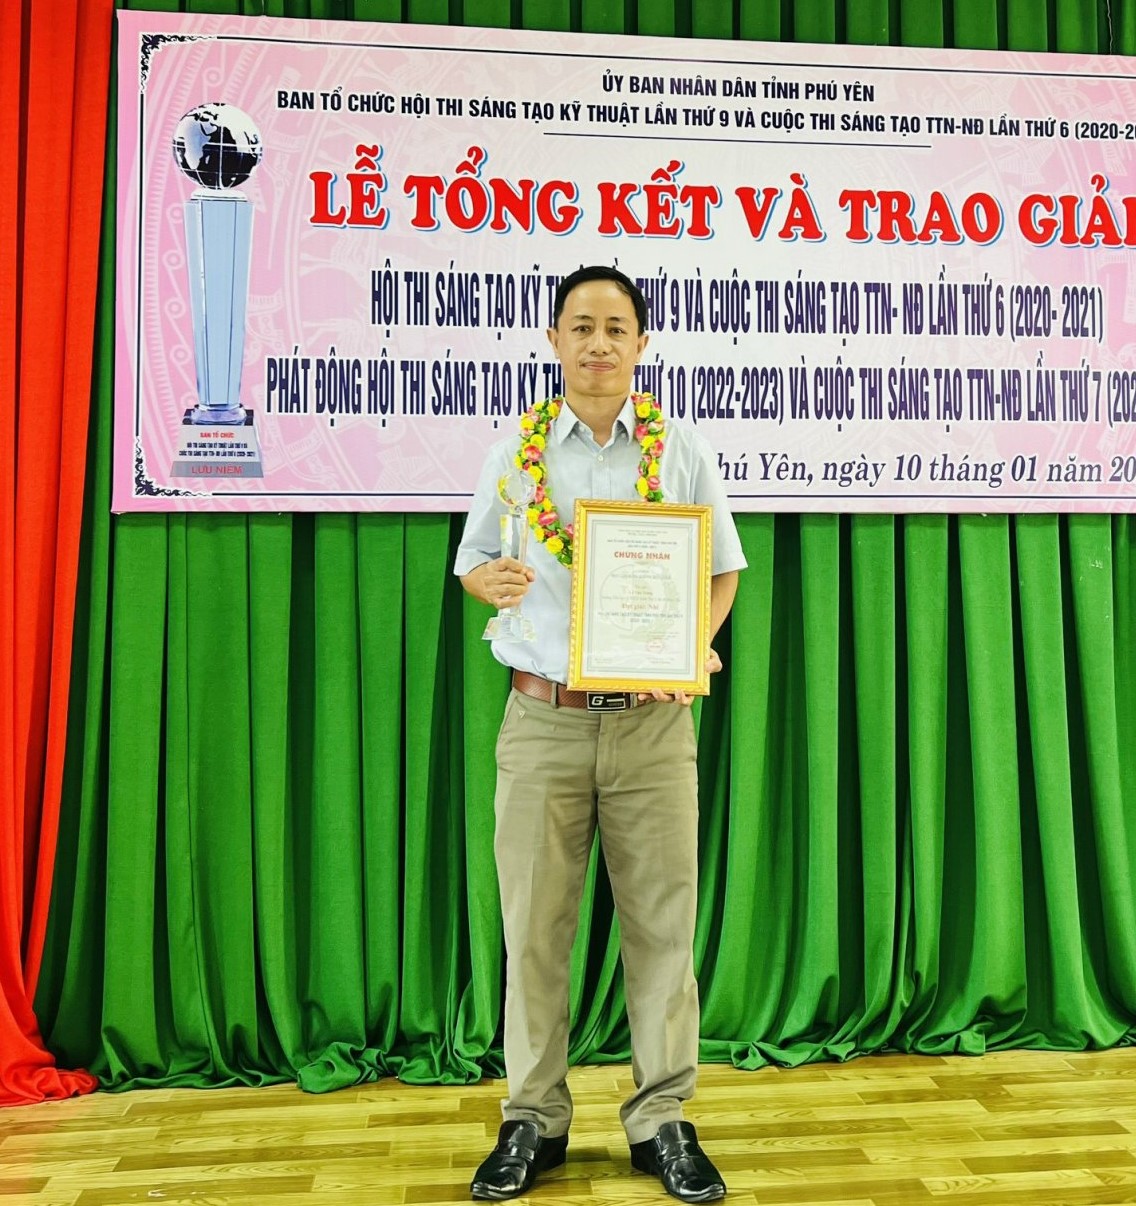 Thầy giáo Lê Văn Trung nhận giải thưởng tại Tổng kết Hội thi Sáng tạo Kỹ thuật tỉnh Phú Yên lần thứ 9 (2020-2021)